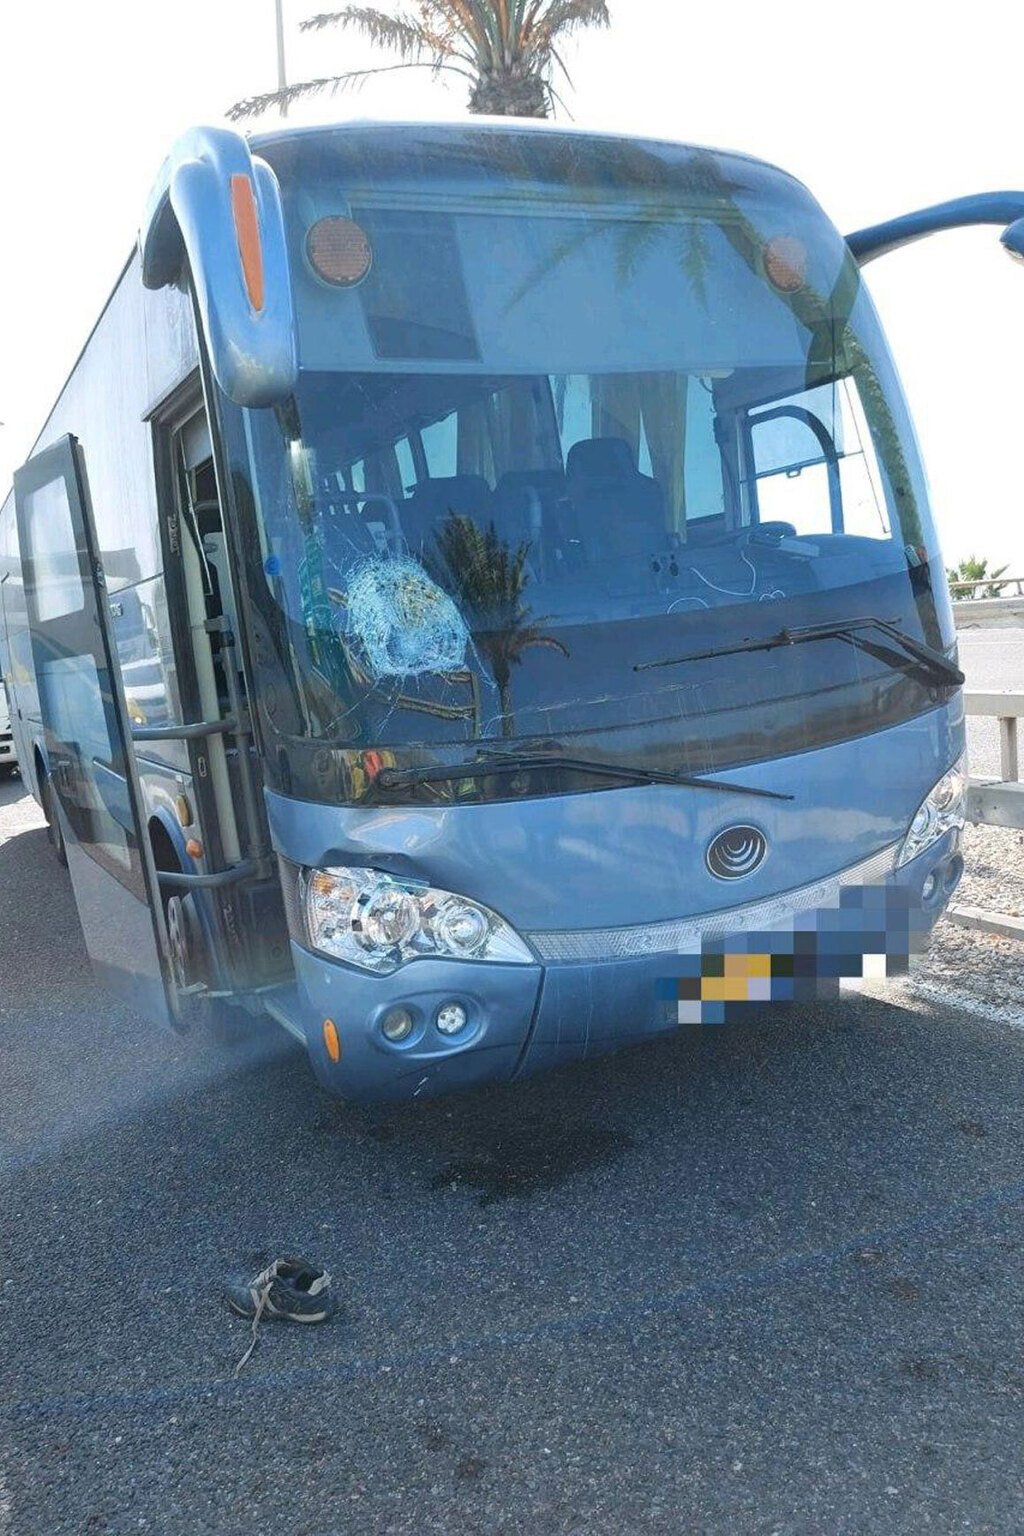 האוטובוס שפגע בהולך הרגל בחיפה